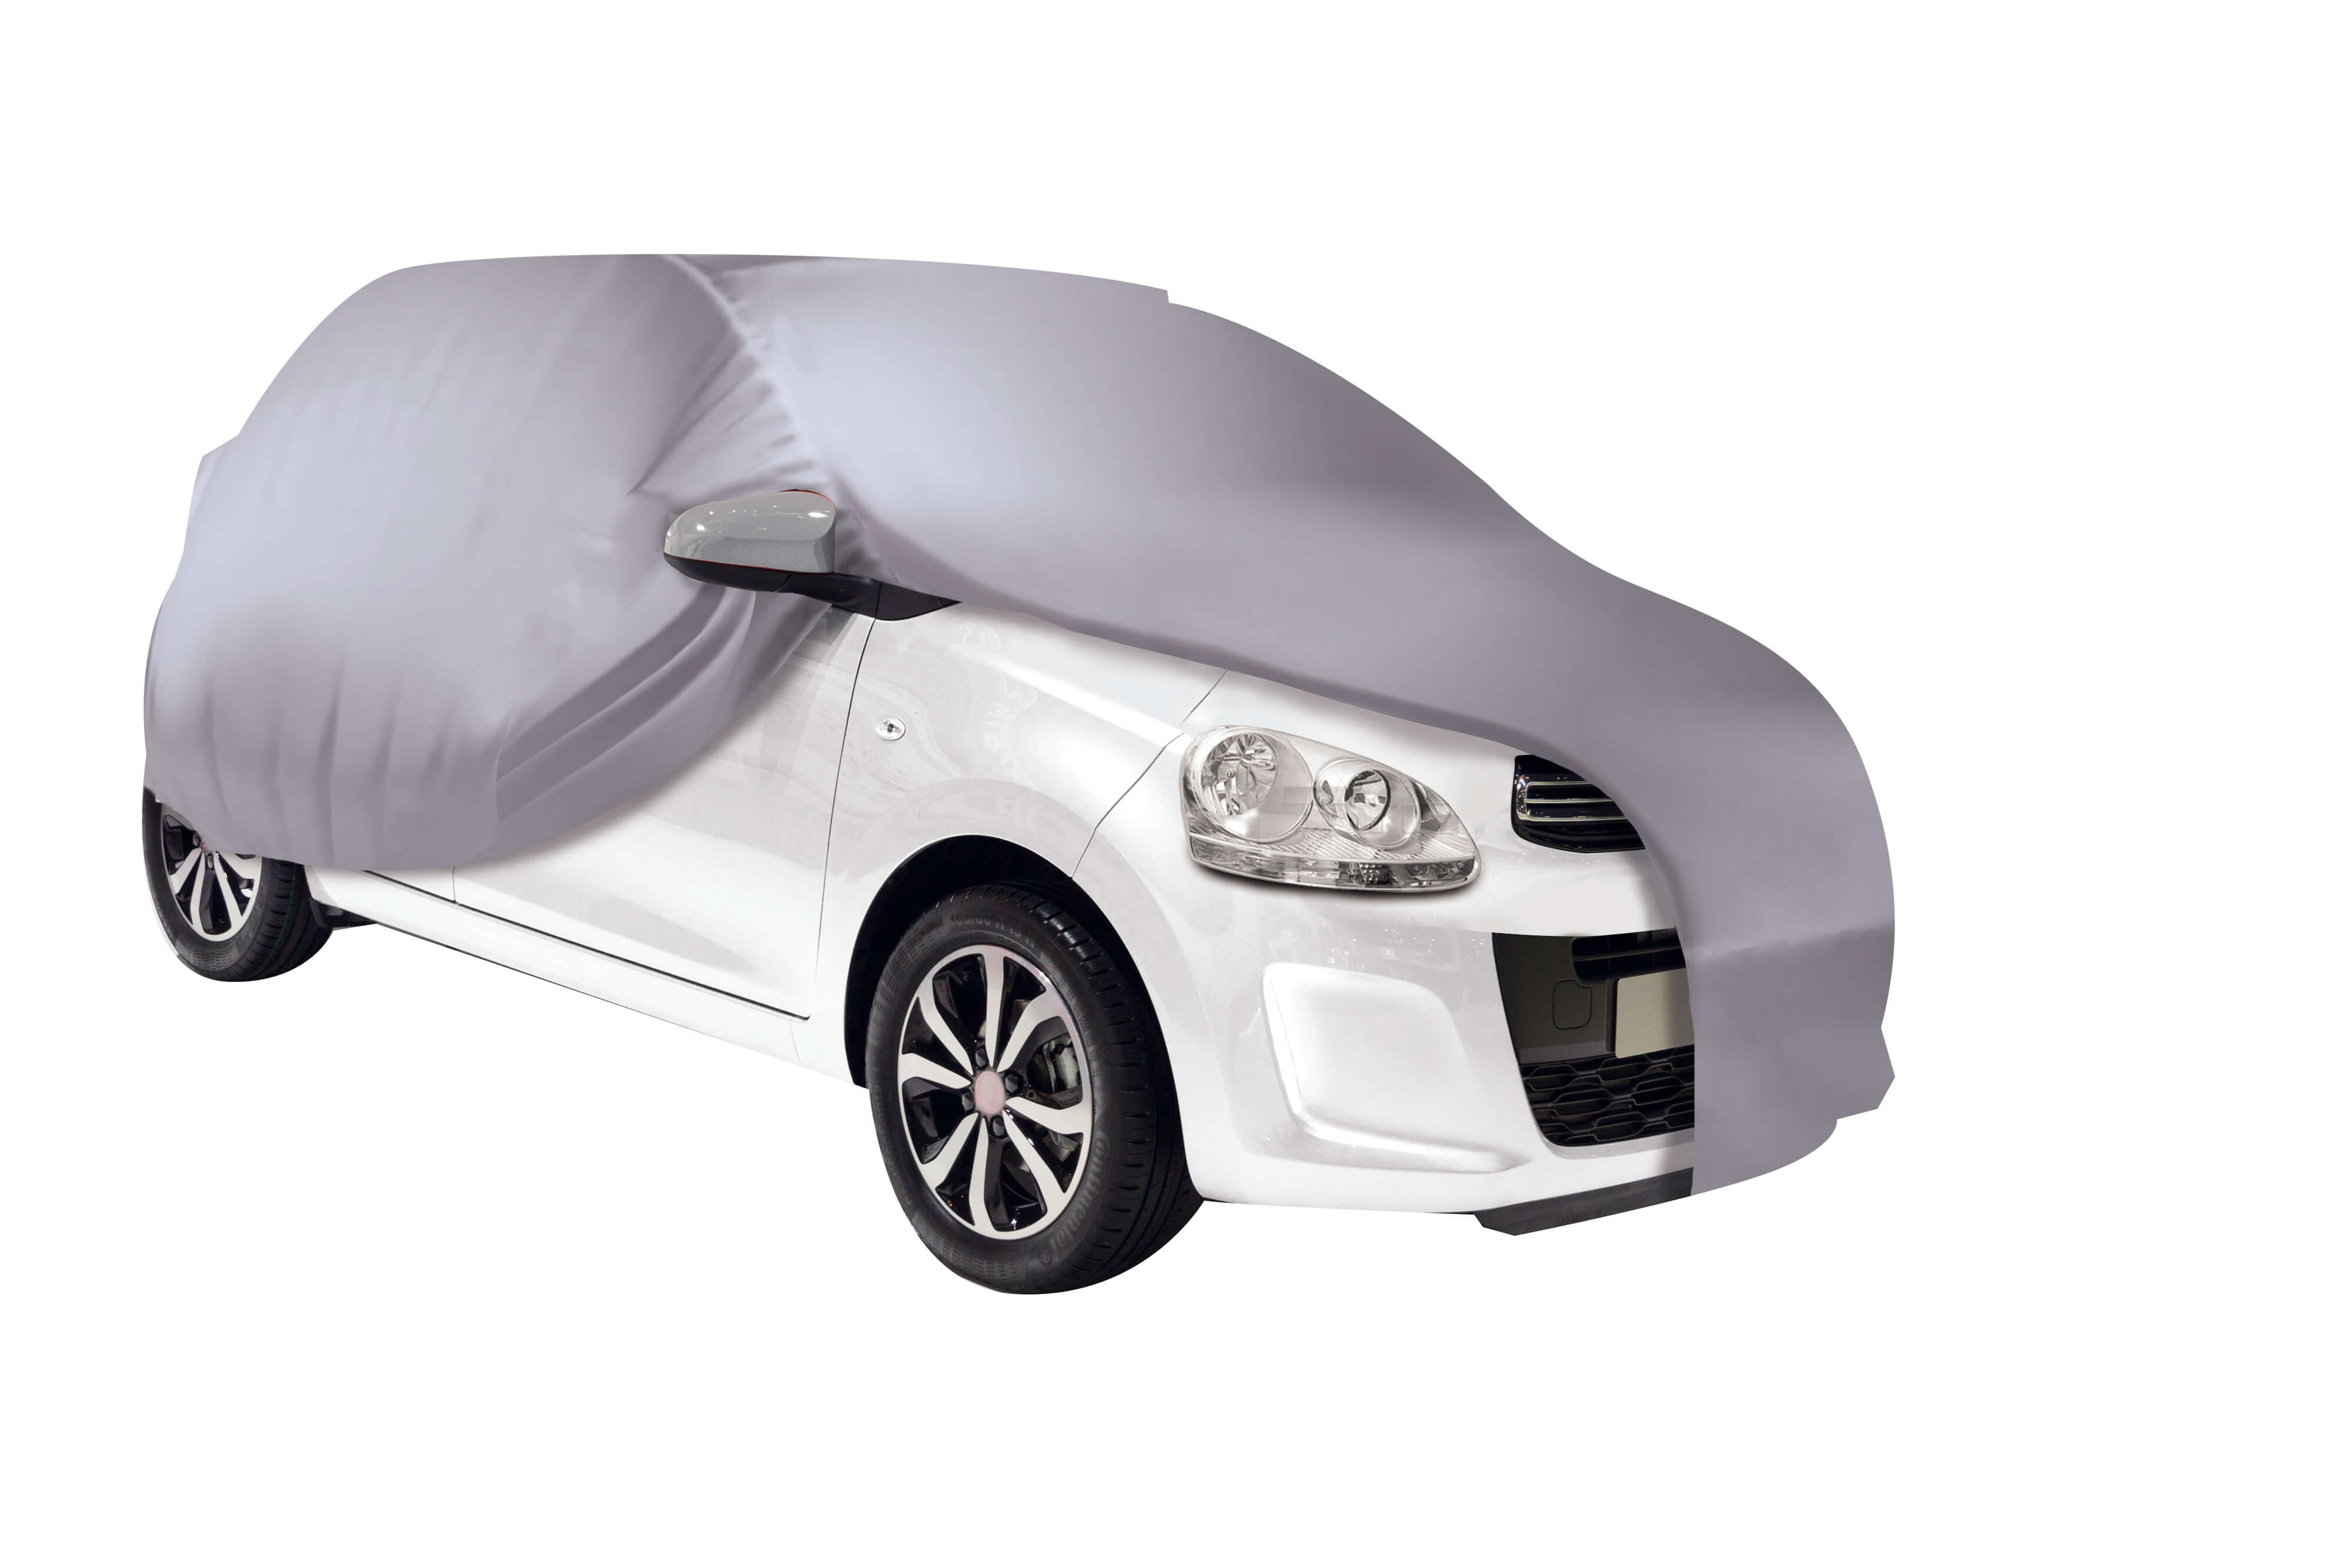 Housse de protection extérieure voiture sans permis polyester